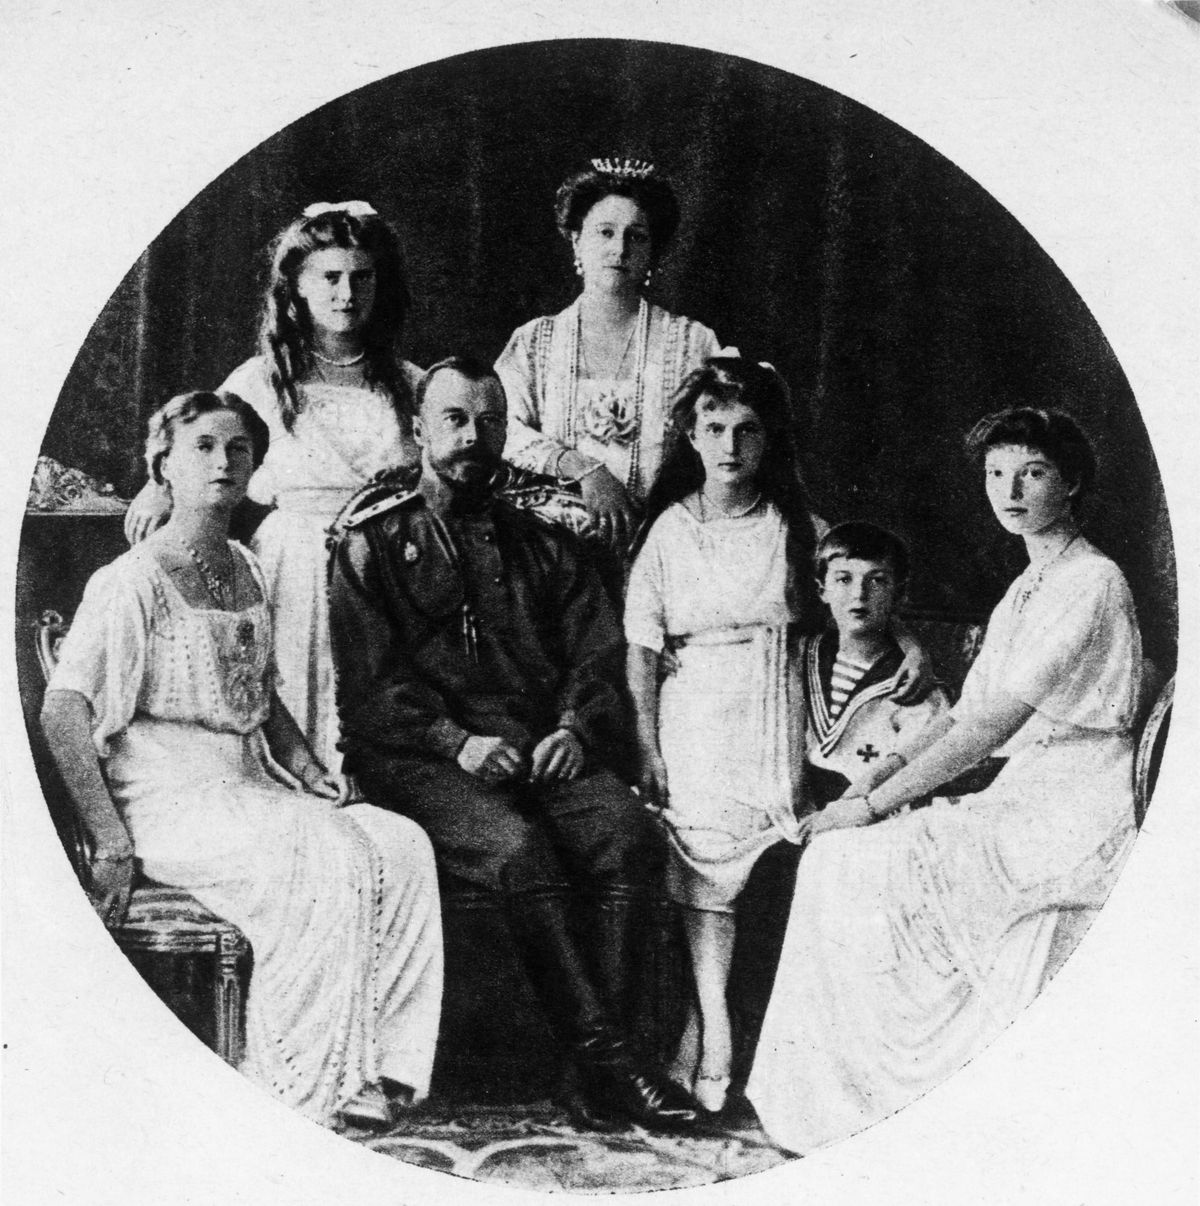 Venemaa viimane tsaar Nikolai II koos oma naise ja viie lapsega lasti 1918. aasta 17. juulil bolševike poolt maha Jekaterinburgis asuva Ipatjevi maja keldris.